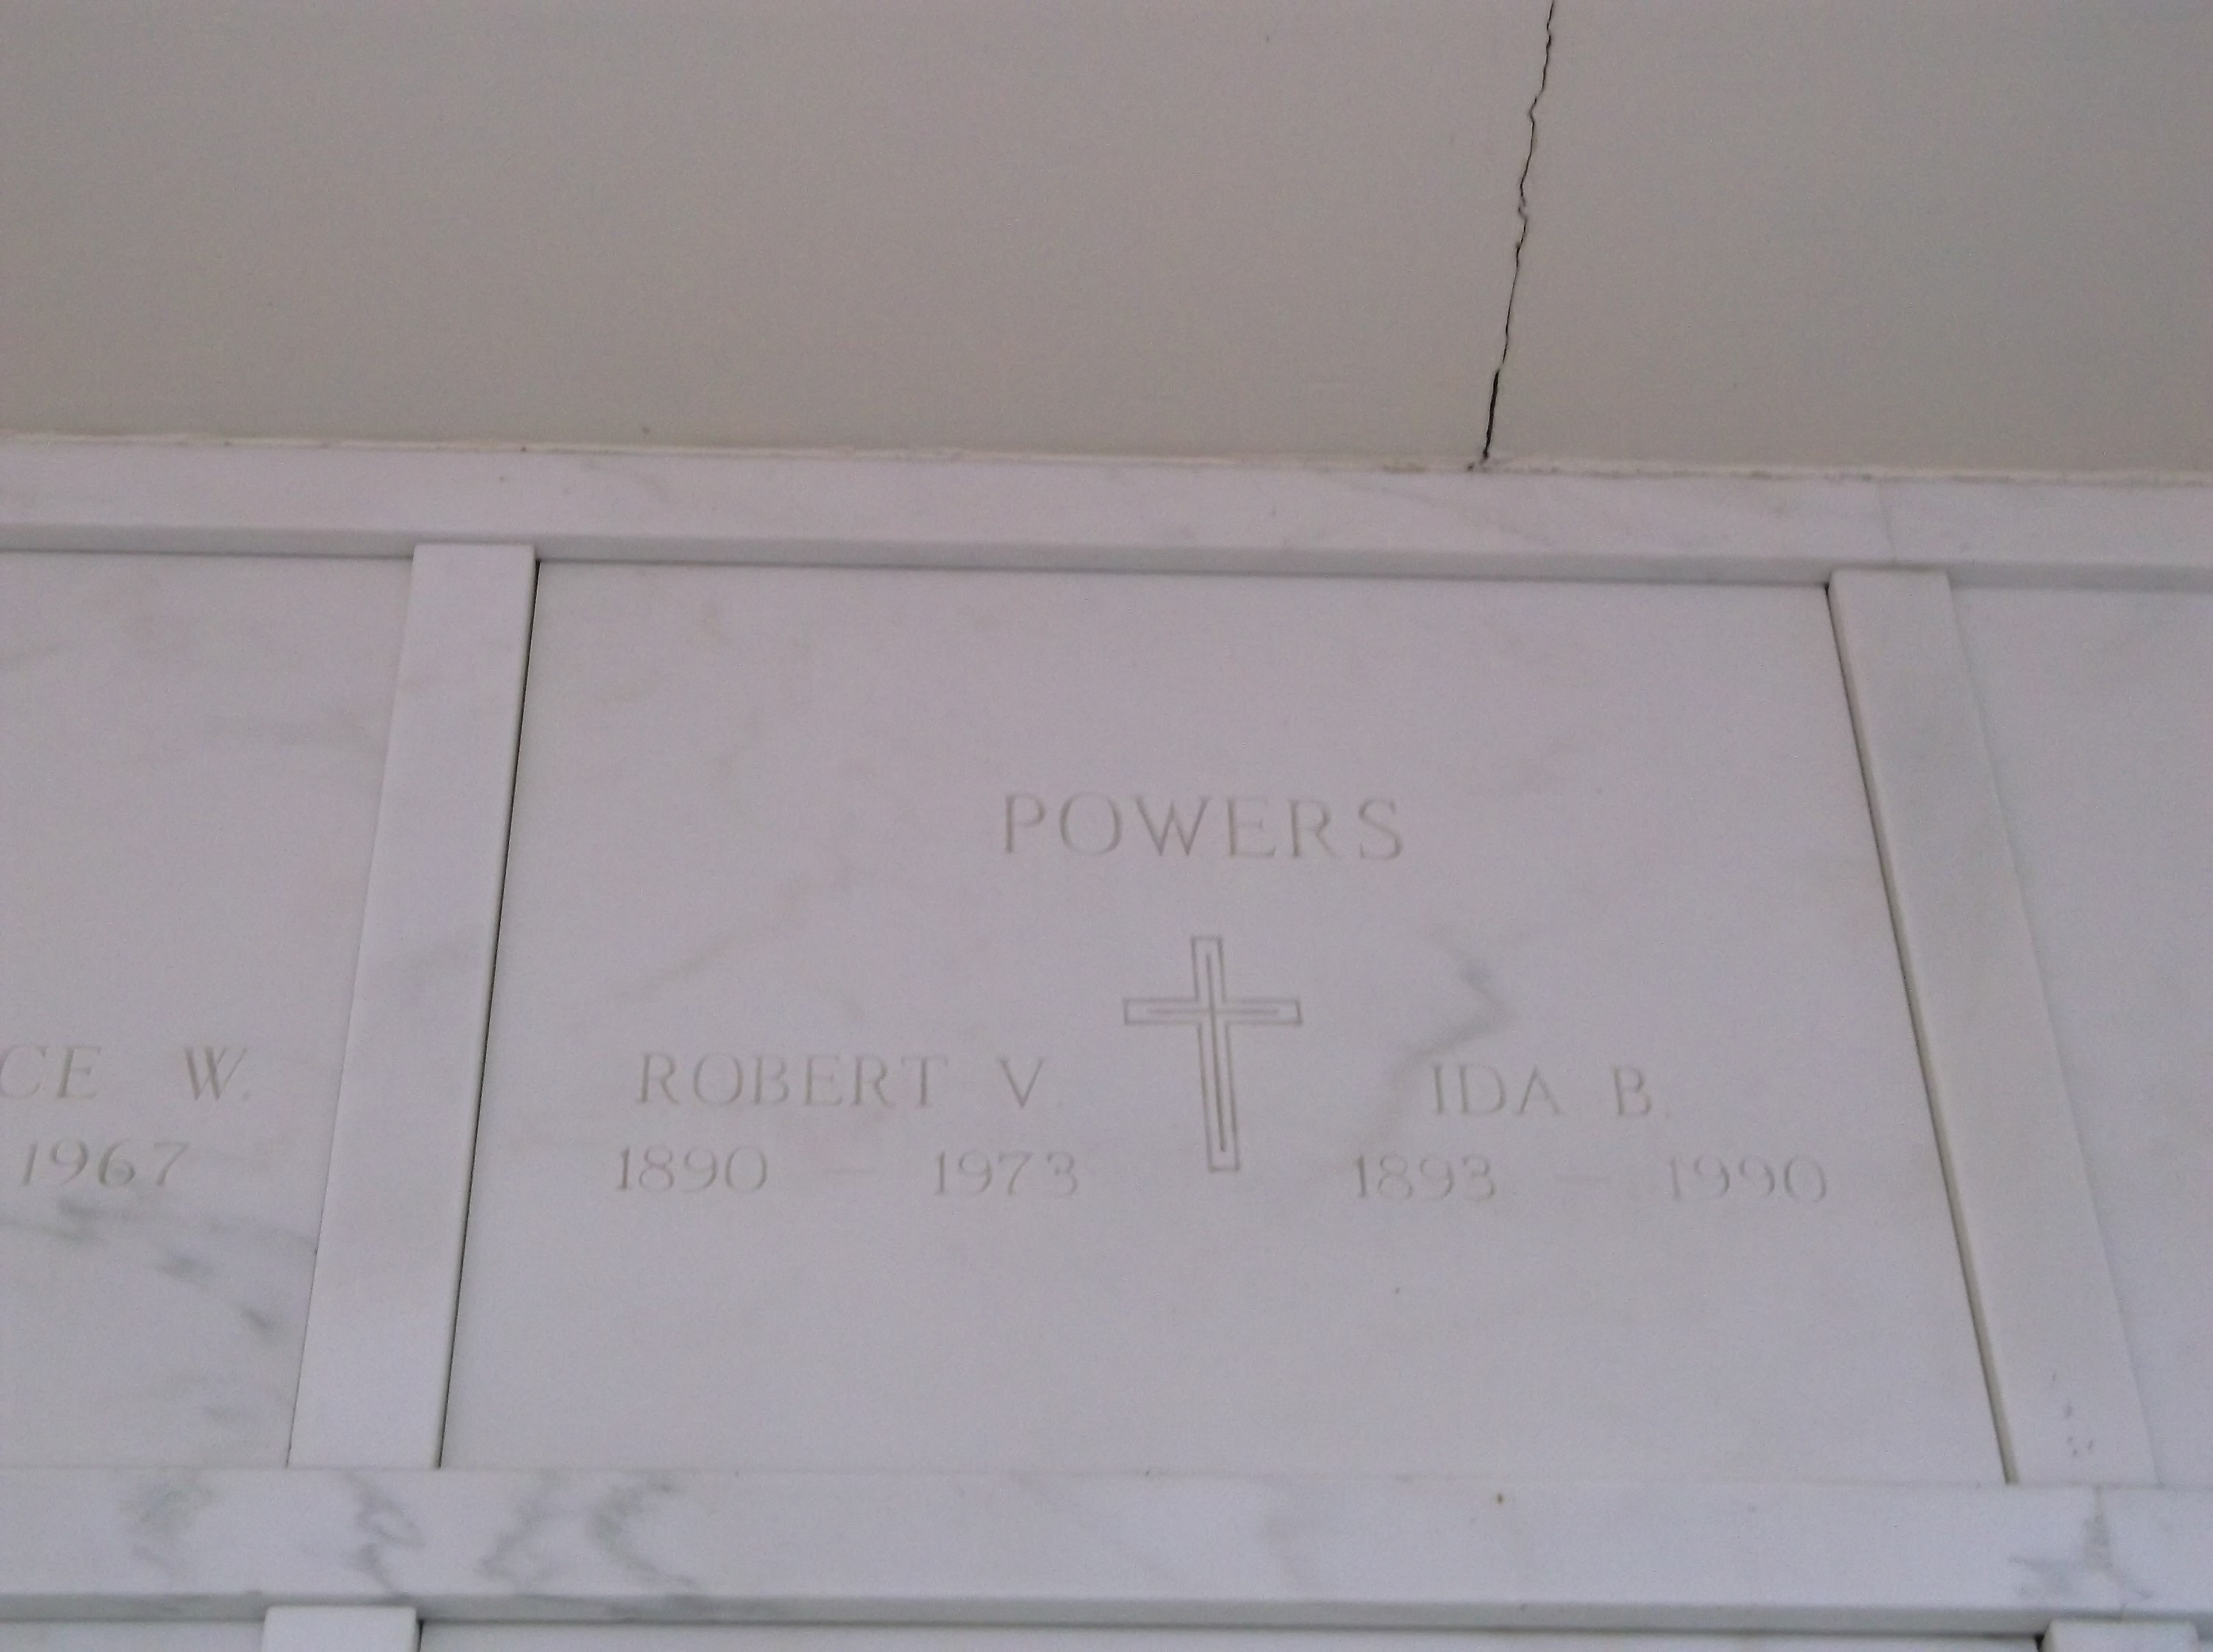 Robert V Powers